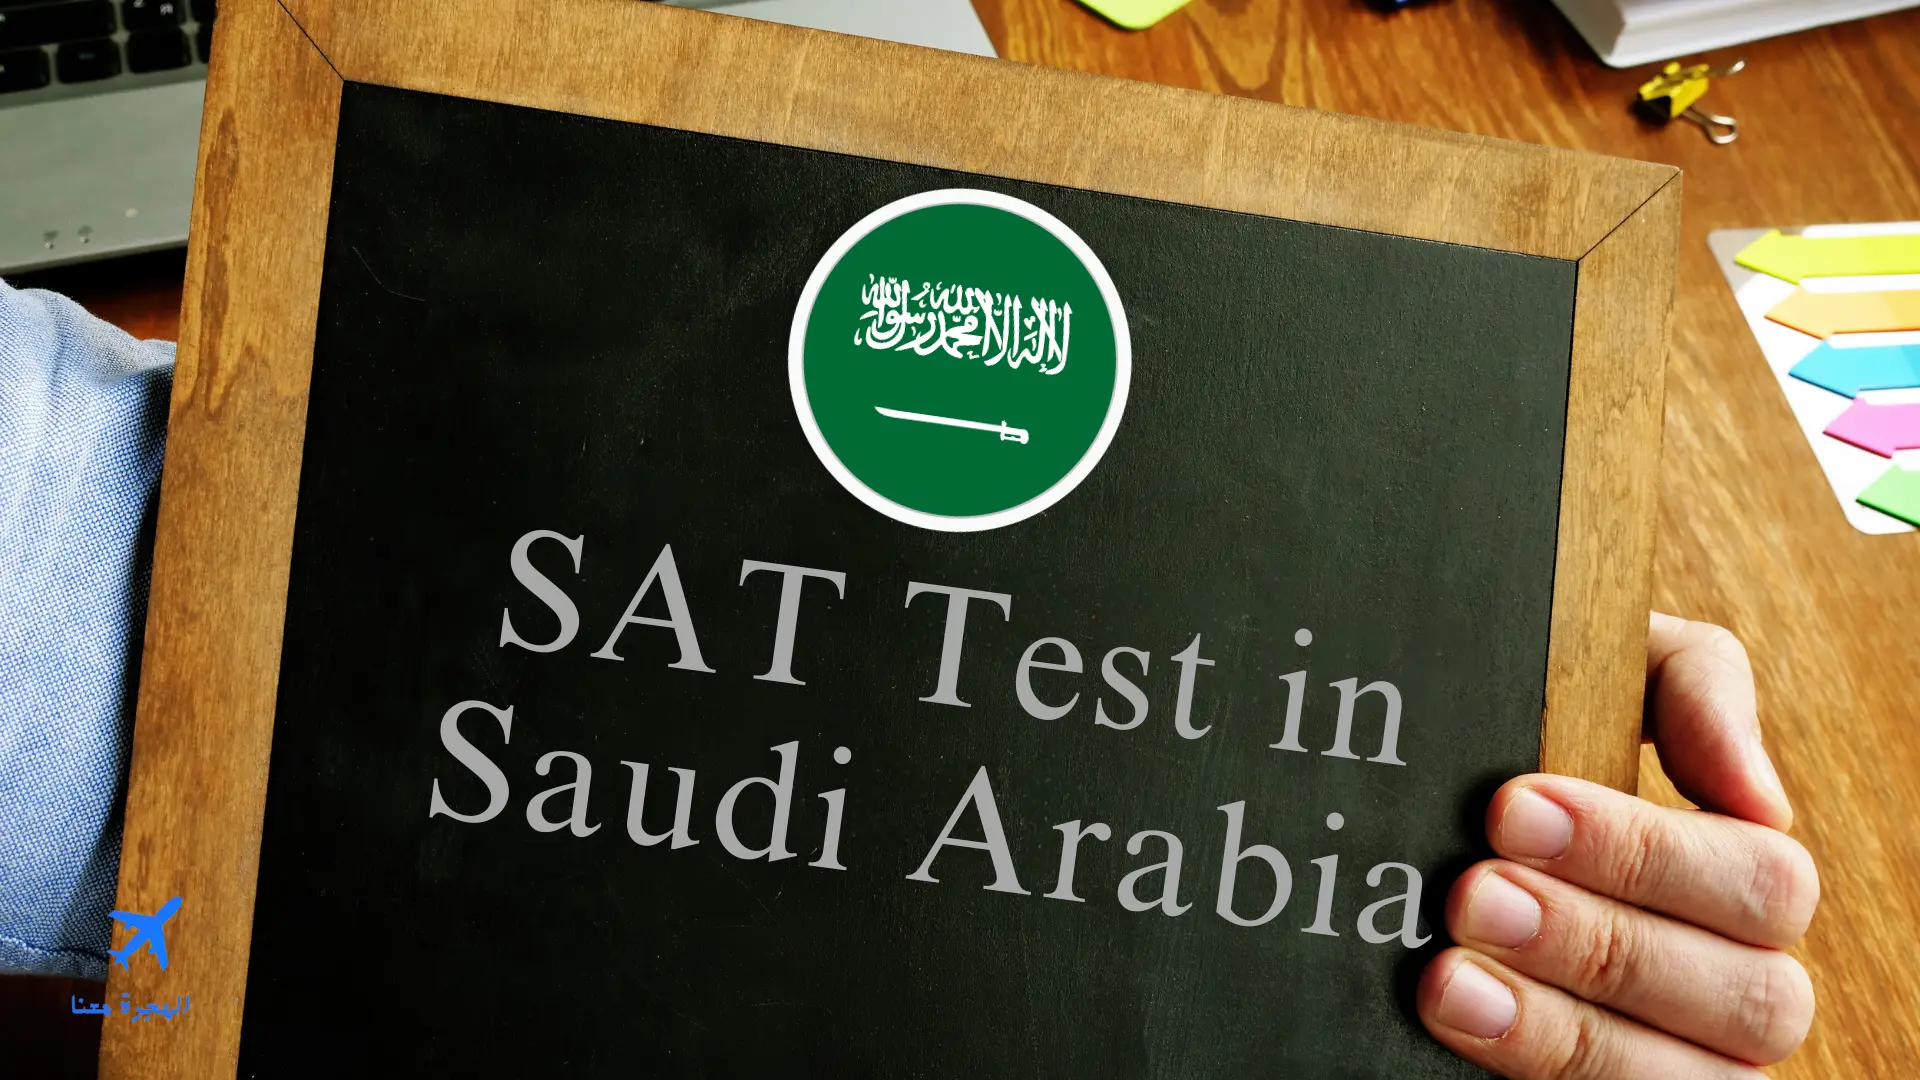 صورة بها علم السعودية وعبارة اختبار سات في السعودية باللغة الإنجليزية